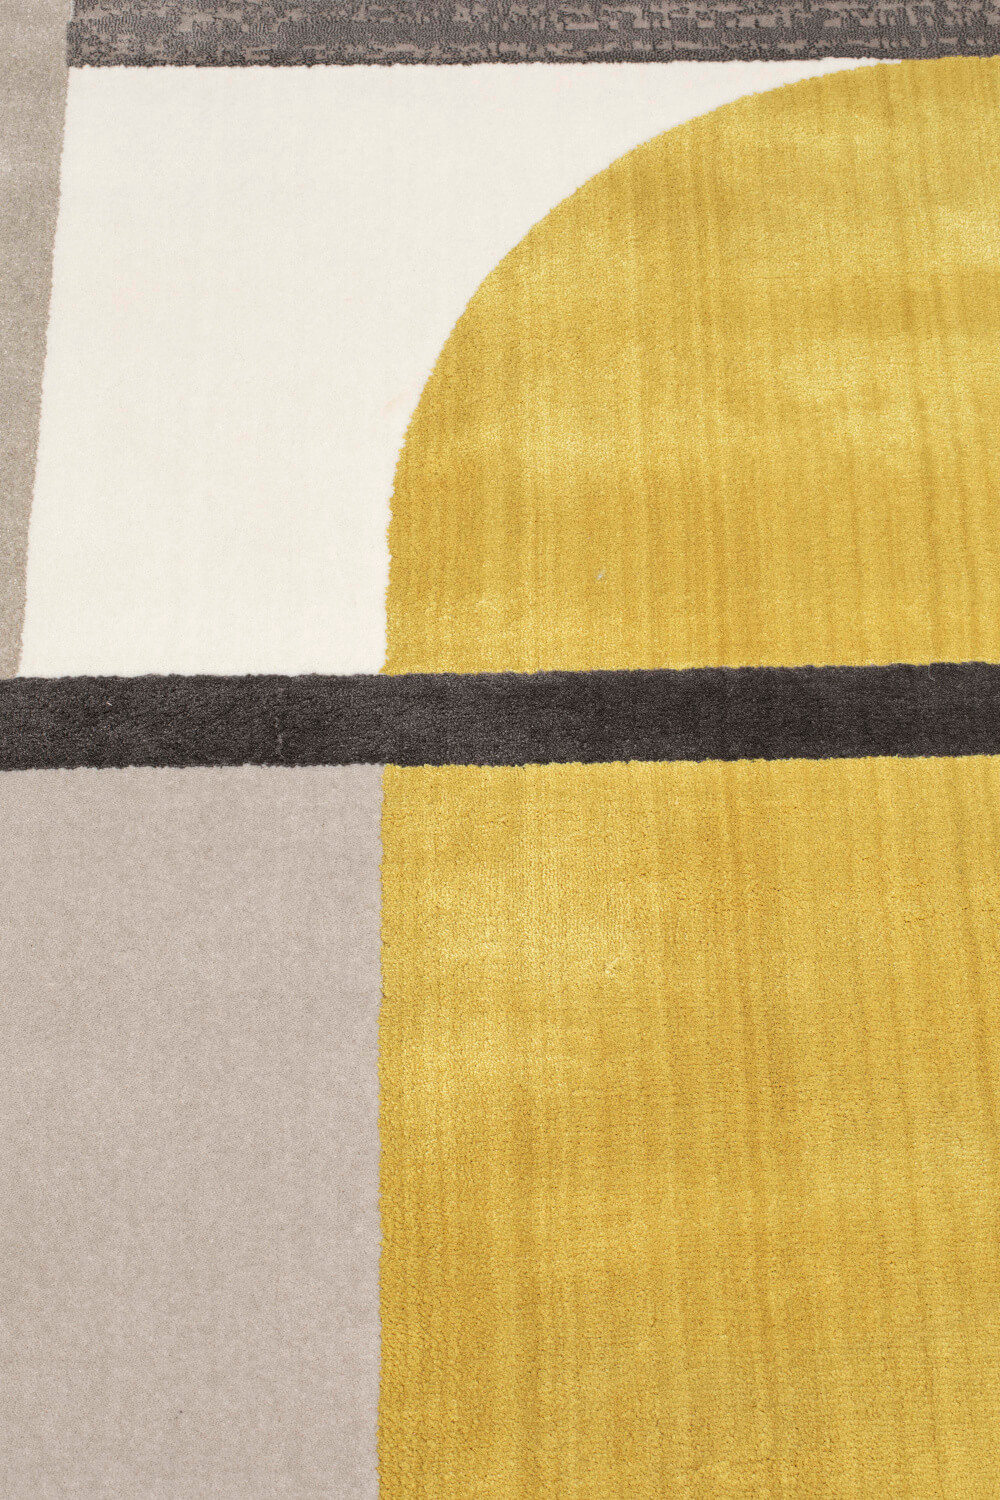 Hilton Teppich, 160 x 230 cm, grau / gelb